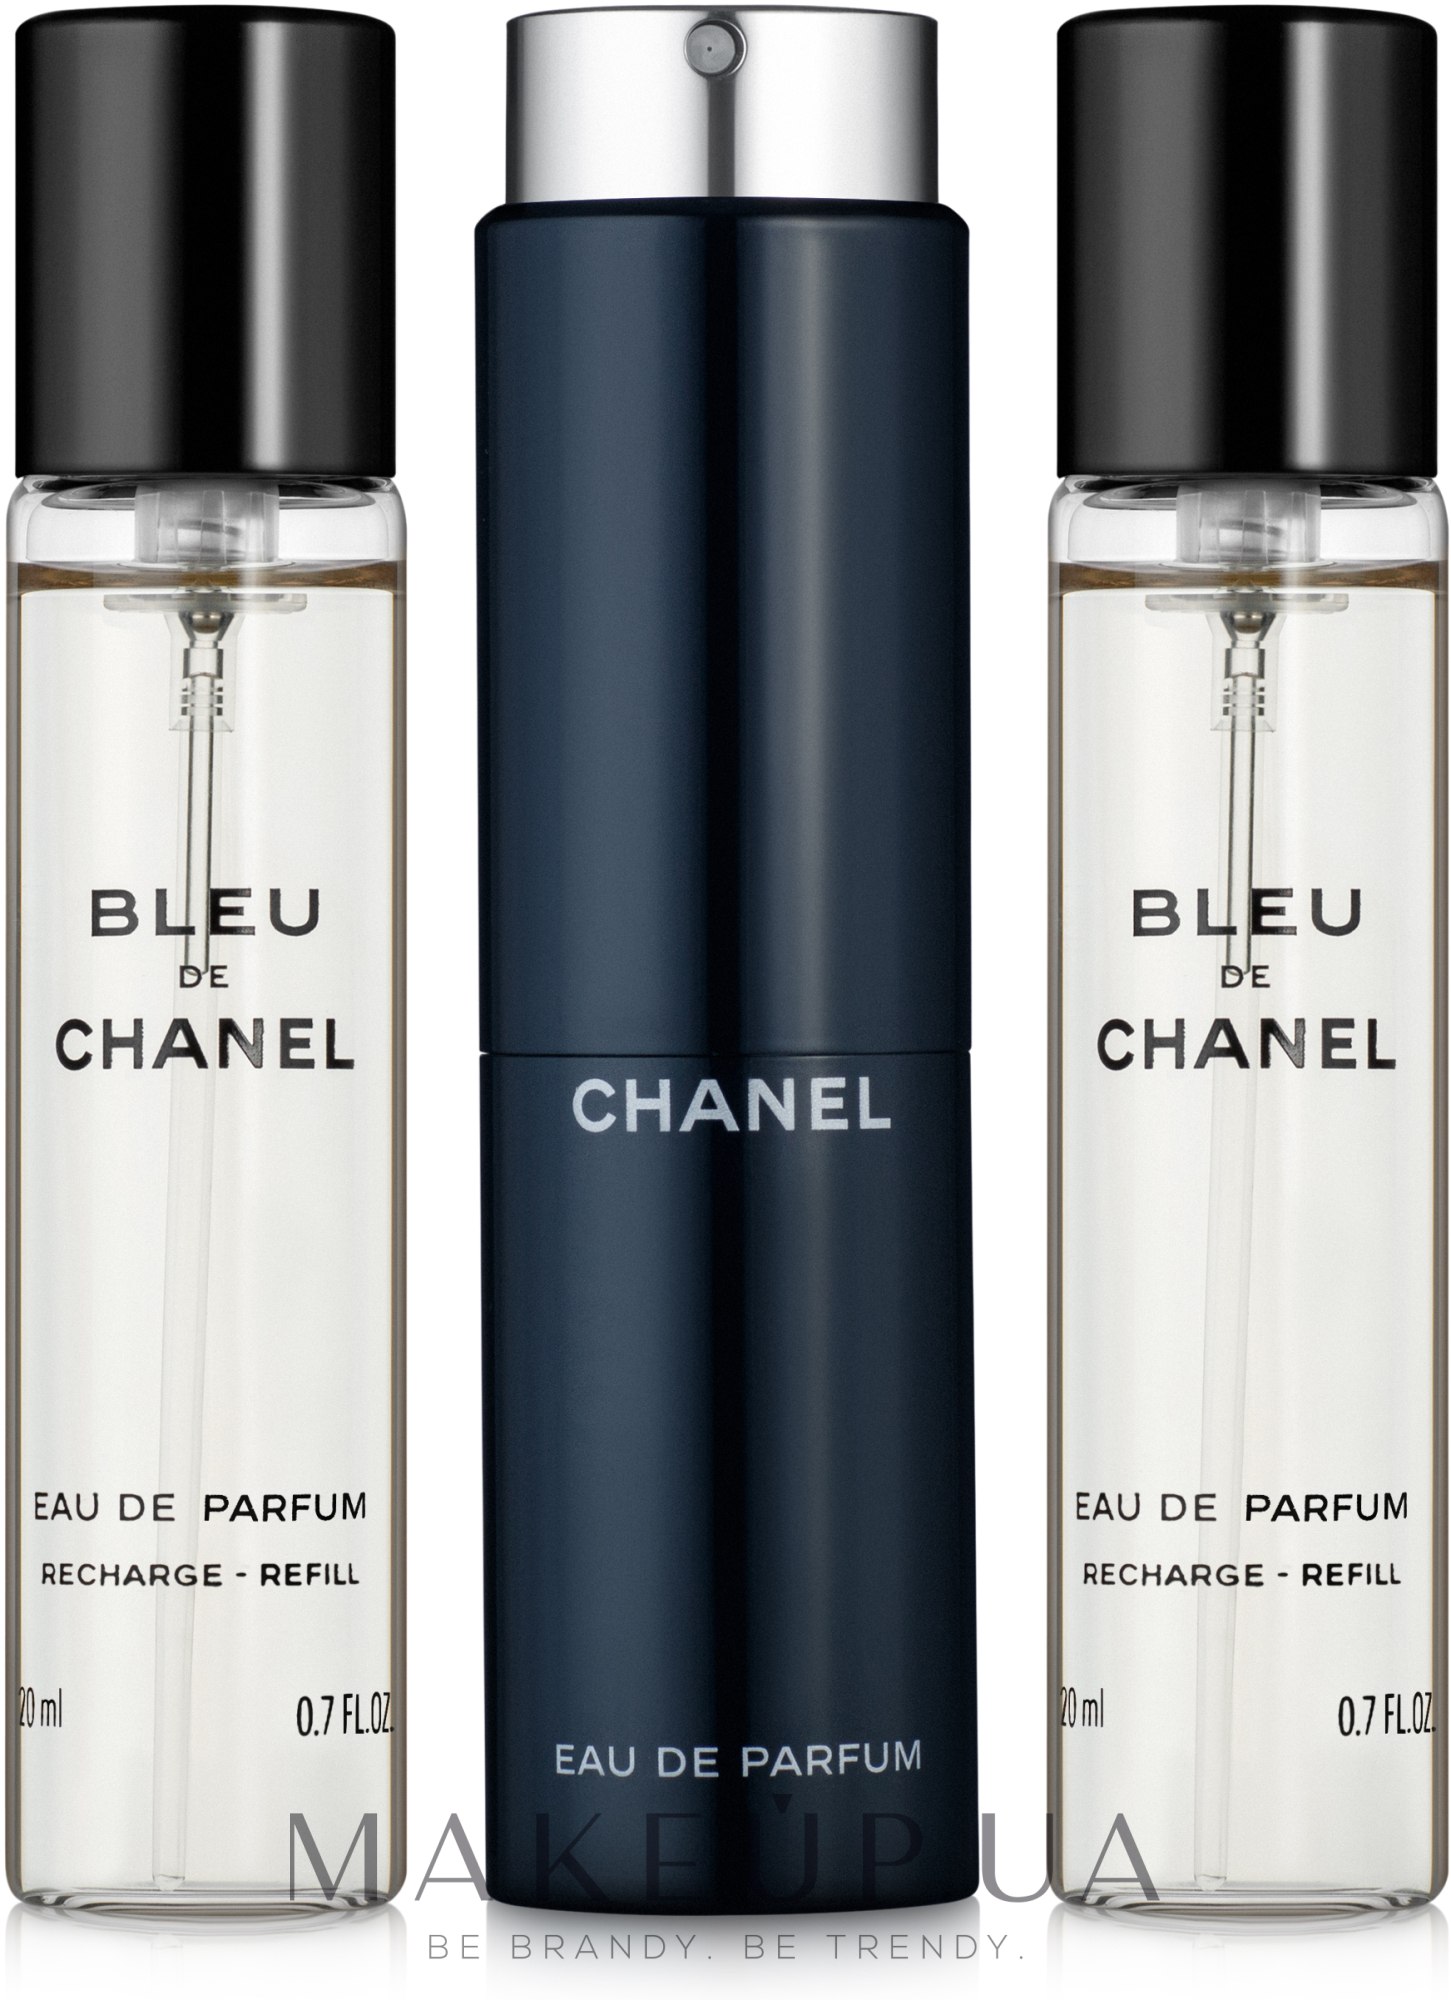 Chanel Bleu de Chanel - Парфюмированная вода (сменный блок с футляром) — фото 3x20ml